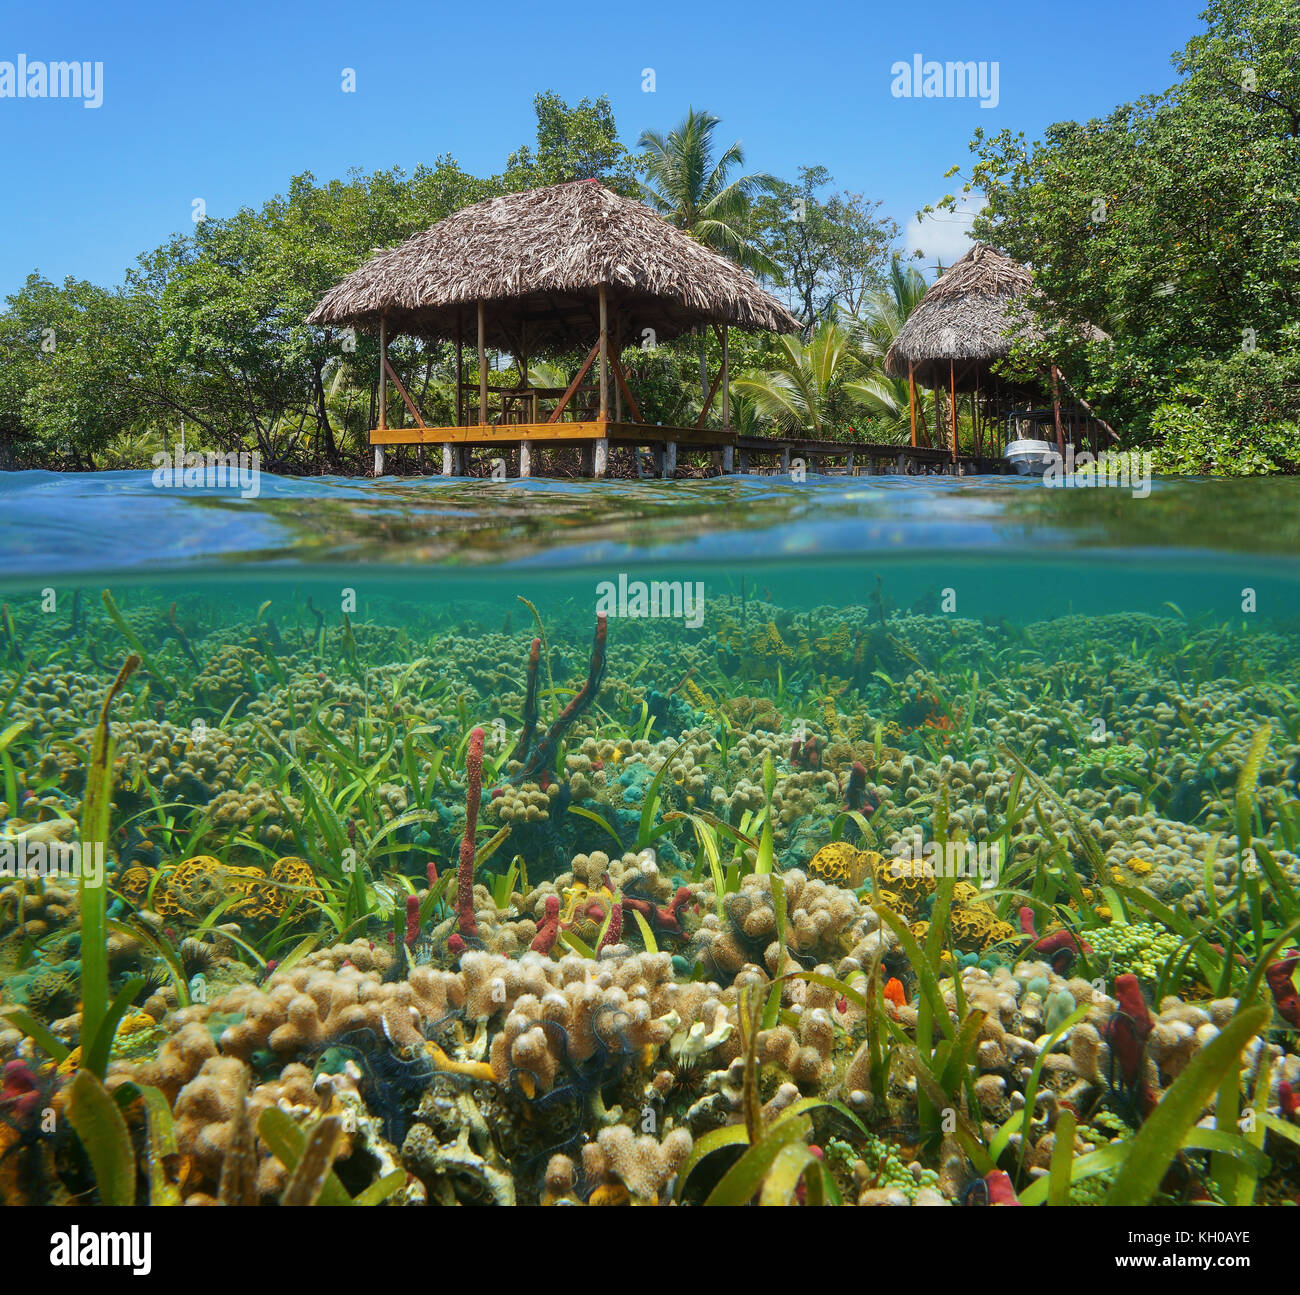 Con tetto di paglia rifugio tropicale sull'acqua con una colorata barriera corallina subacquea, mar dei Caraibi Foto Stock